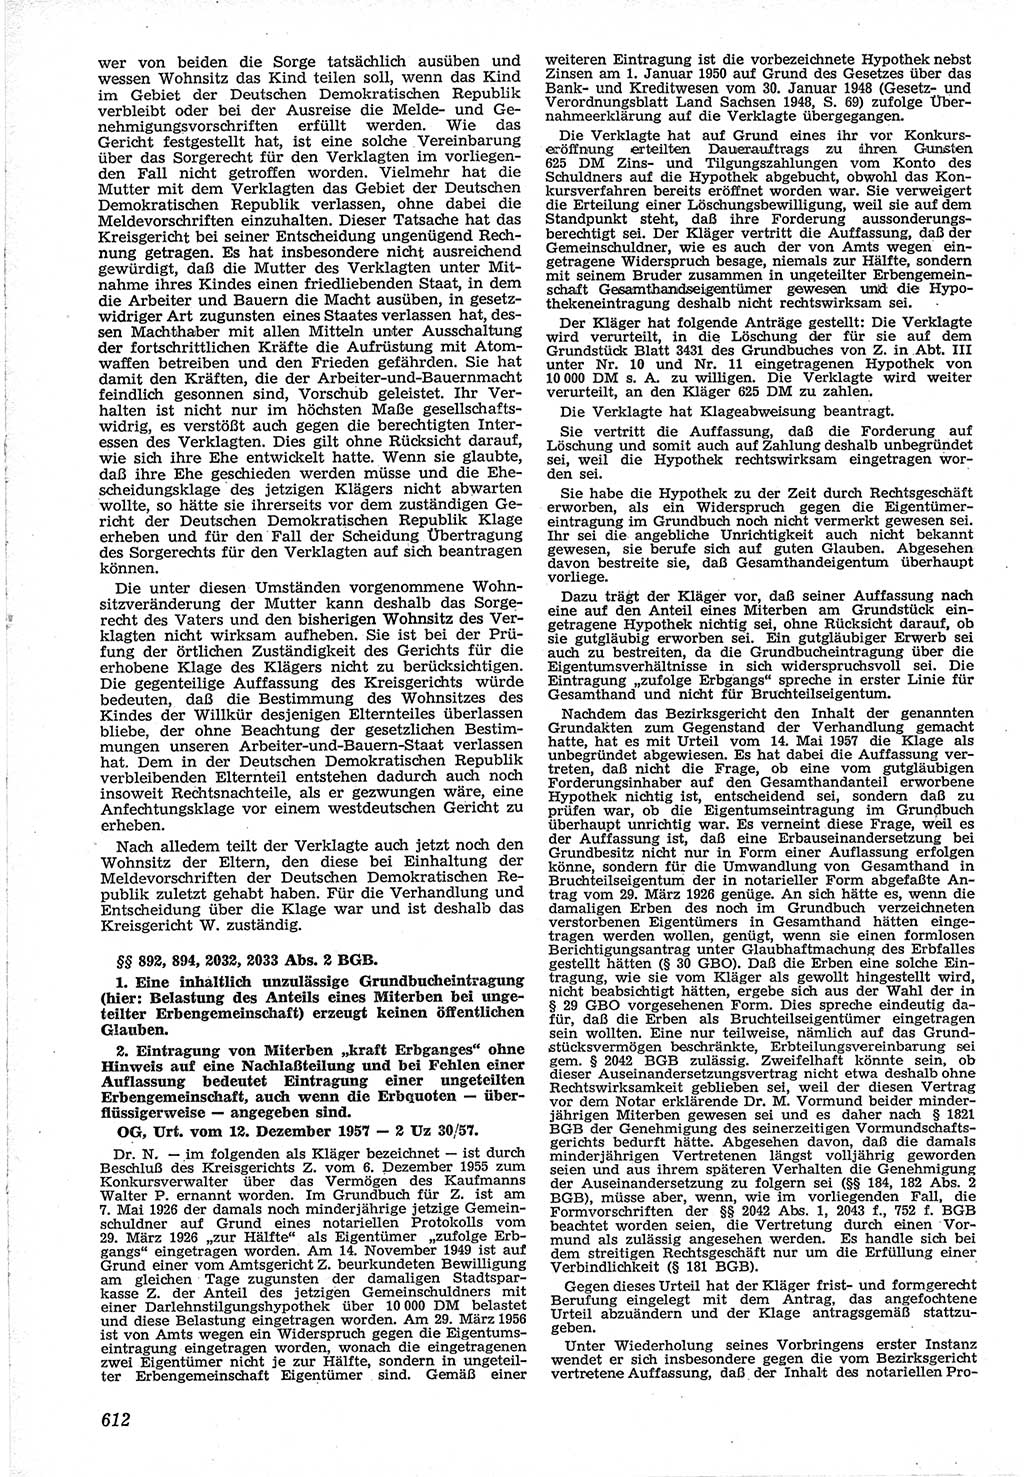 Neue Justiz (NJ), Zeitschrift für Recht und Rechtswissenschaft [Deutsche Demokratische Republik (DDR)], 12. Jahrgang 1958, Seite 612 (NJ DDR 1958, S. 612)